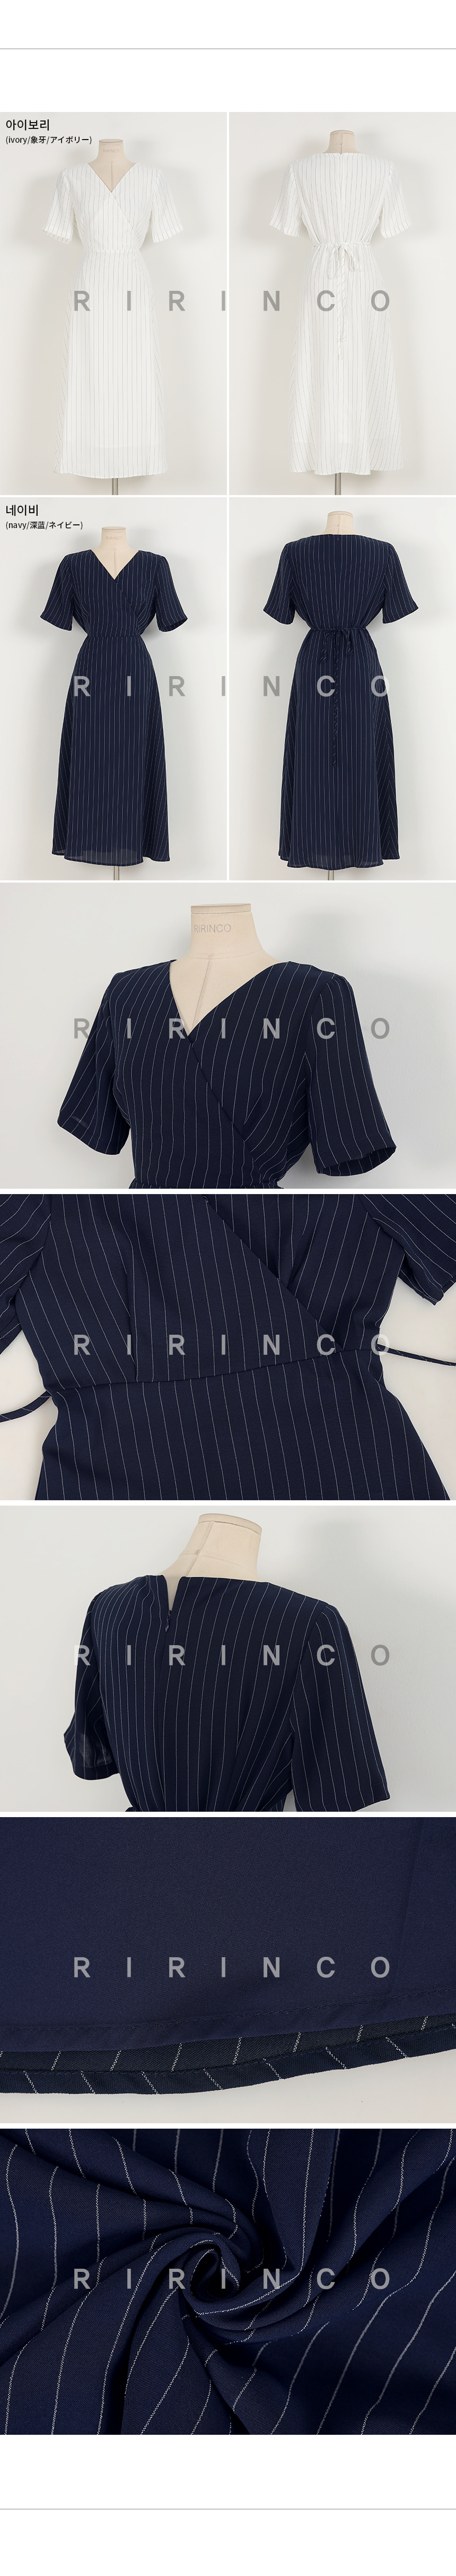 RIRINCO [カップル/ペアルック] ストライプ柄バックリボンロングワンピース